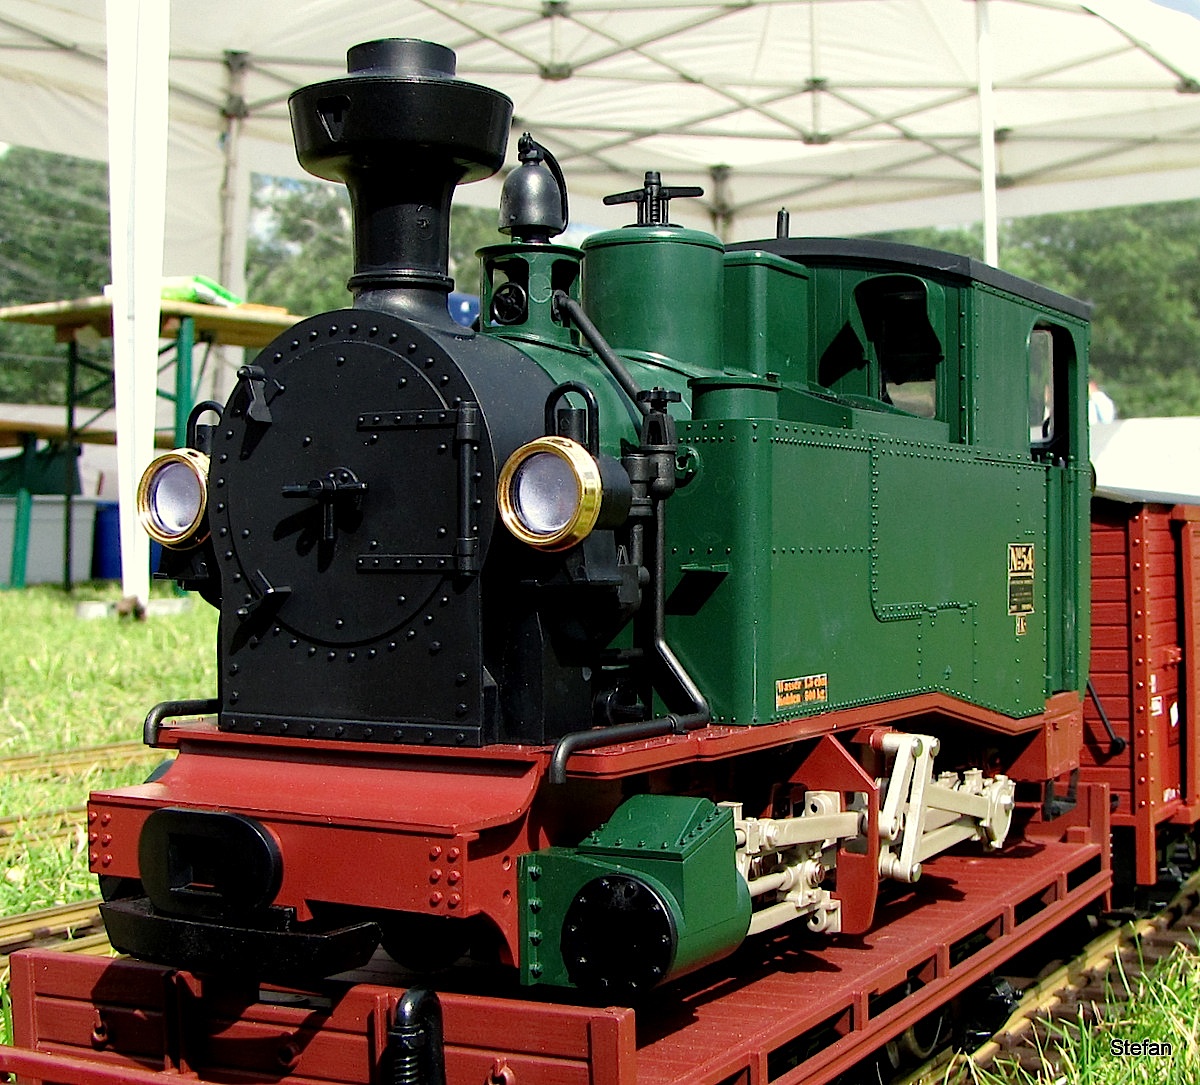 Sächsische Dampflokomotive (Saxon steam locomotive) I K 54